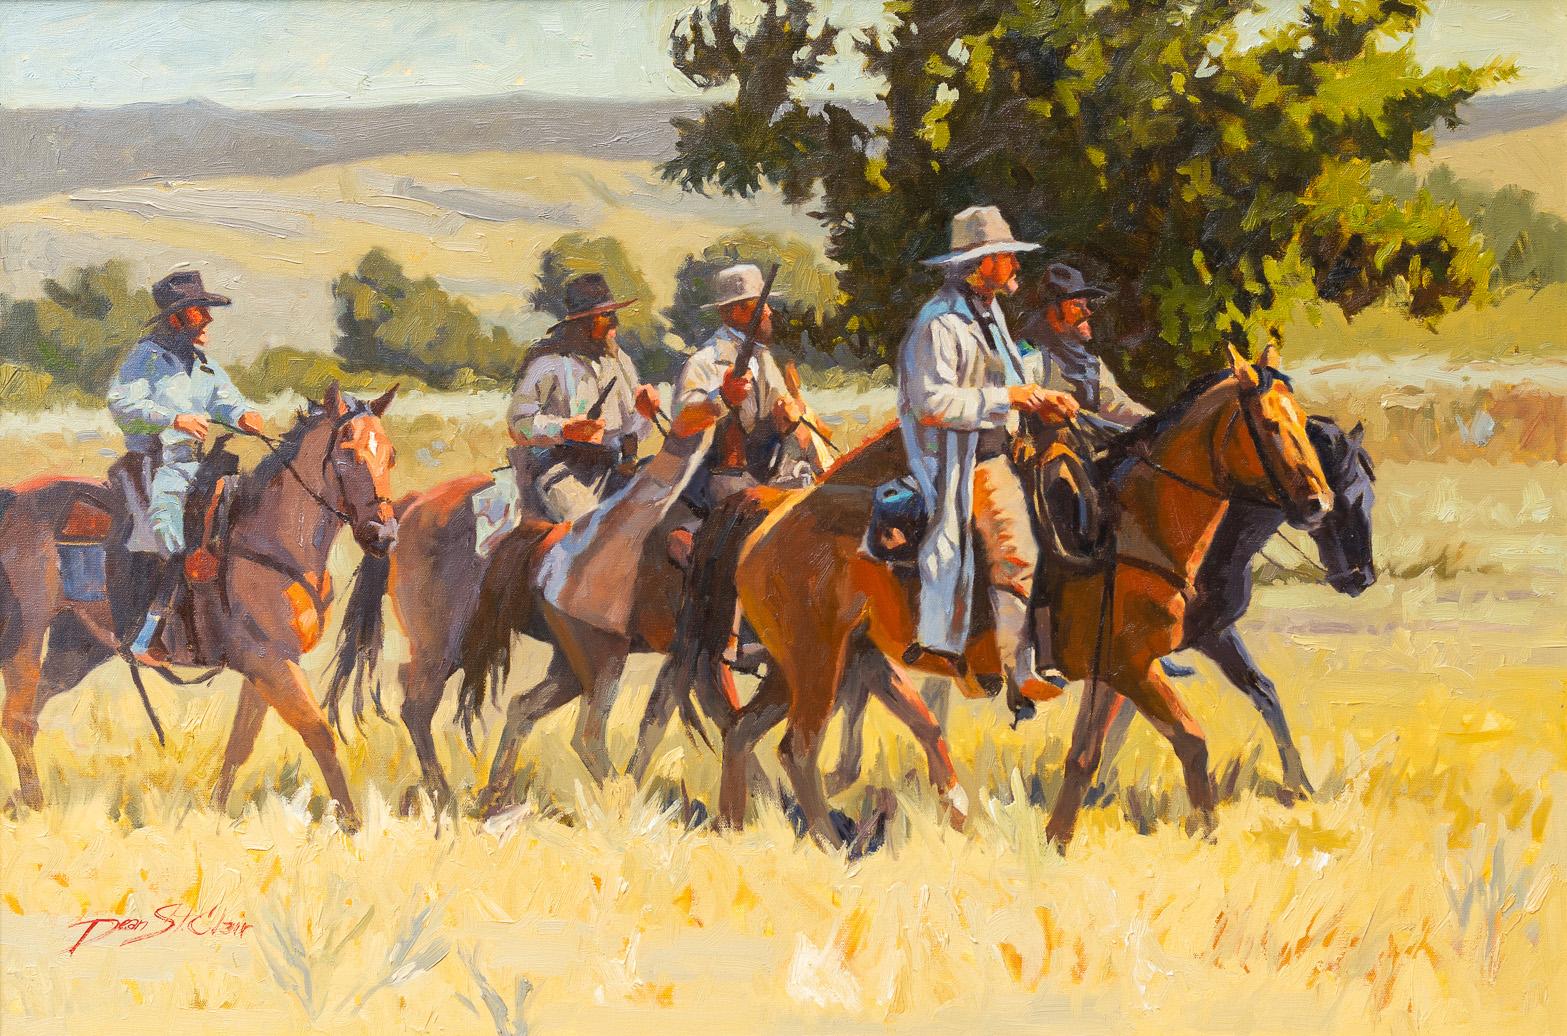 Dean St. Clair Figurative Painting - "The Tough Bunch" Cowboy Posse Scene